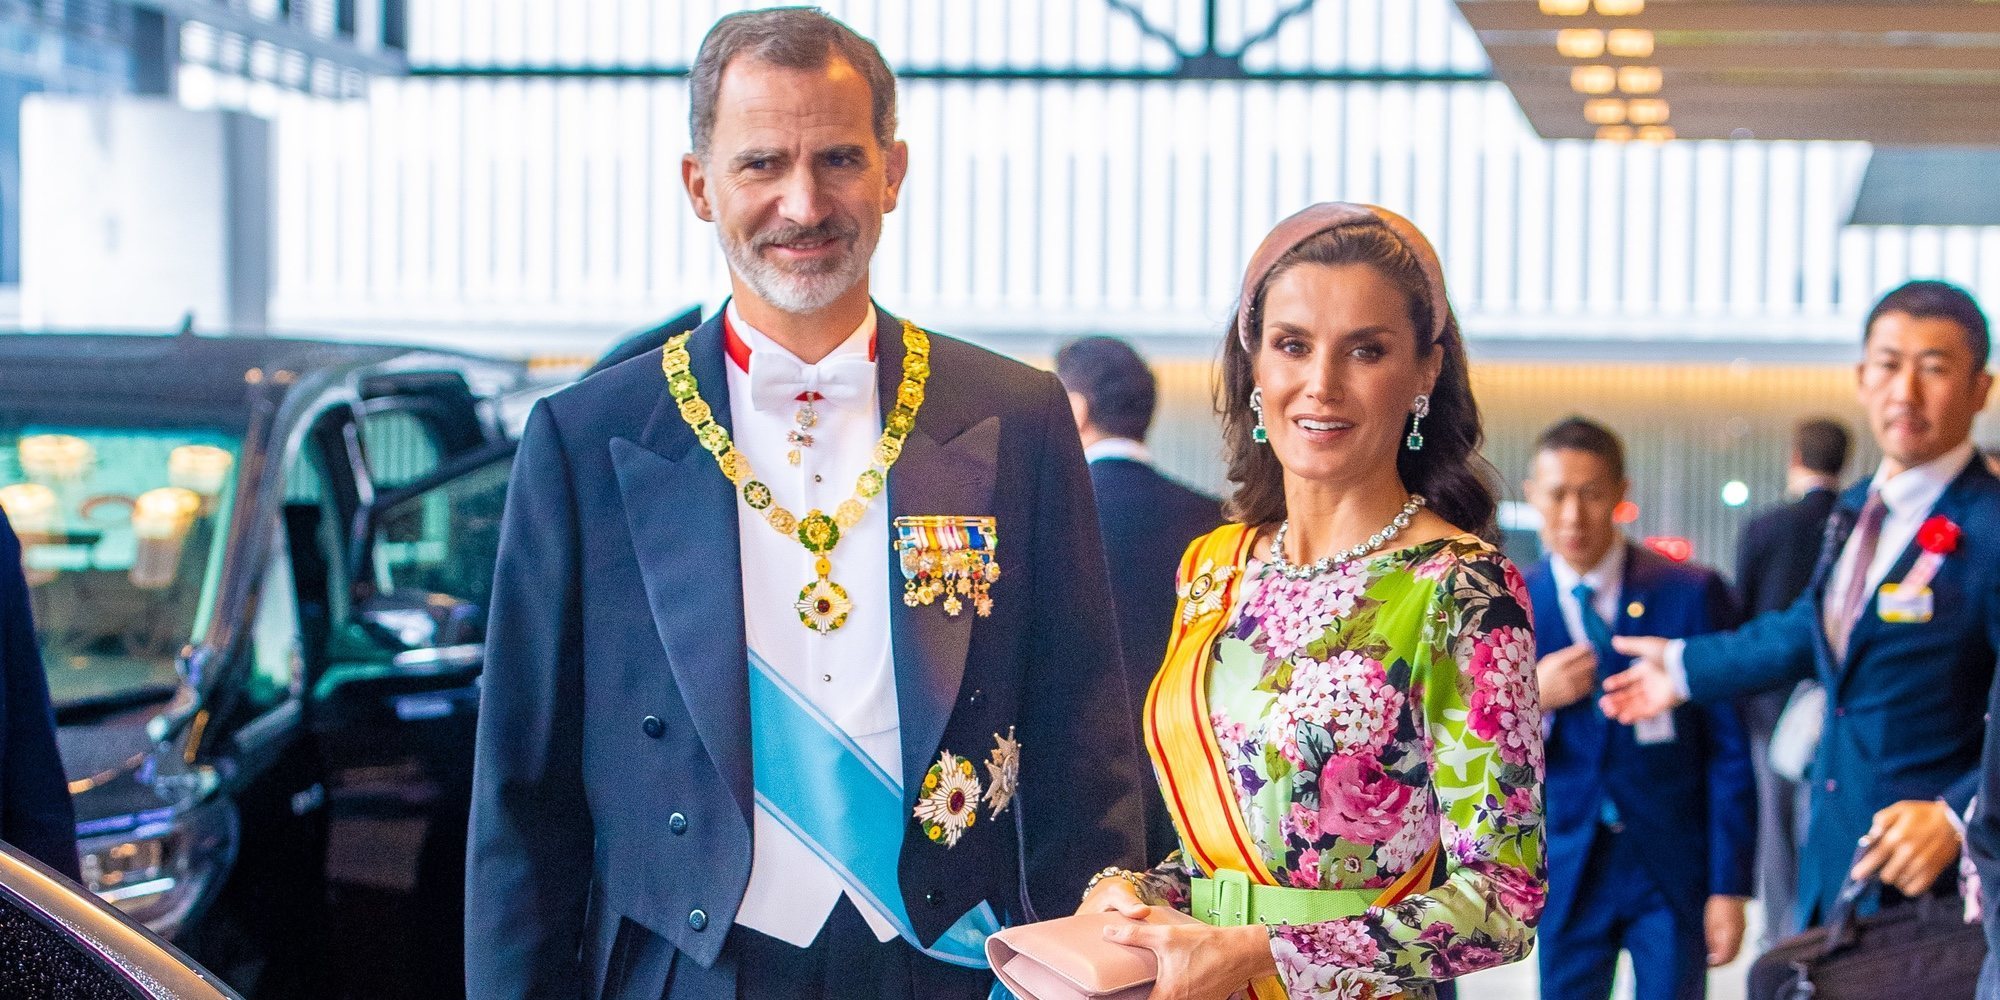 Los Reyes Felipe y Letizia en la entronización de Naruhito de Japón: sonrisas y un vestido de flores